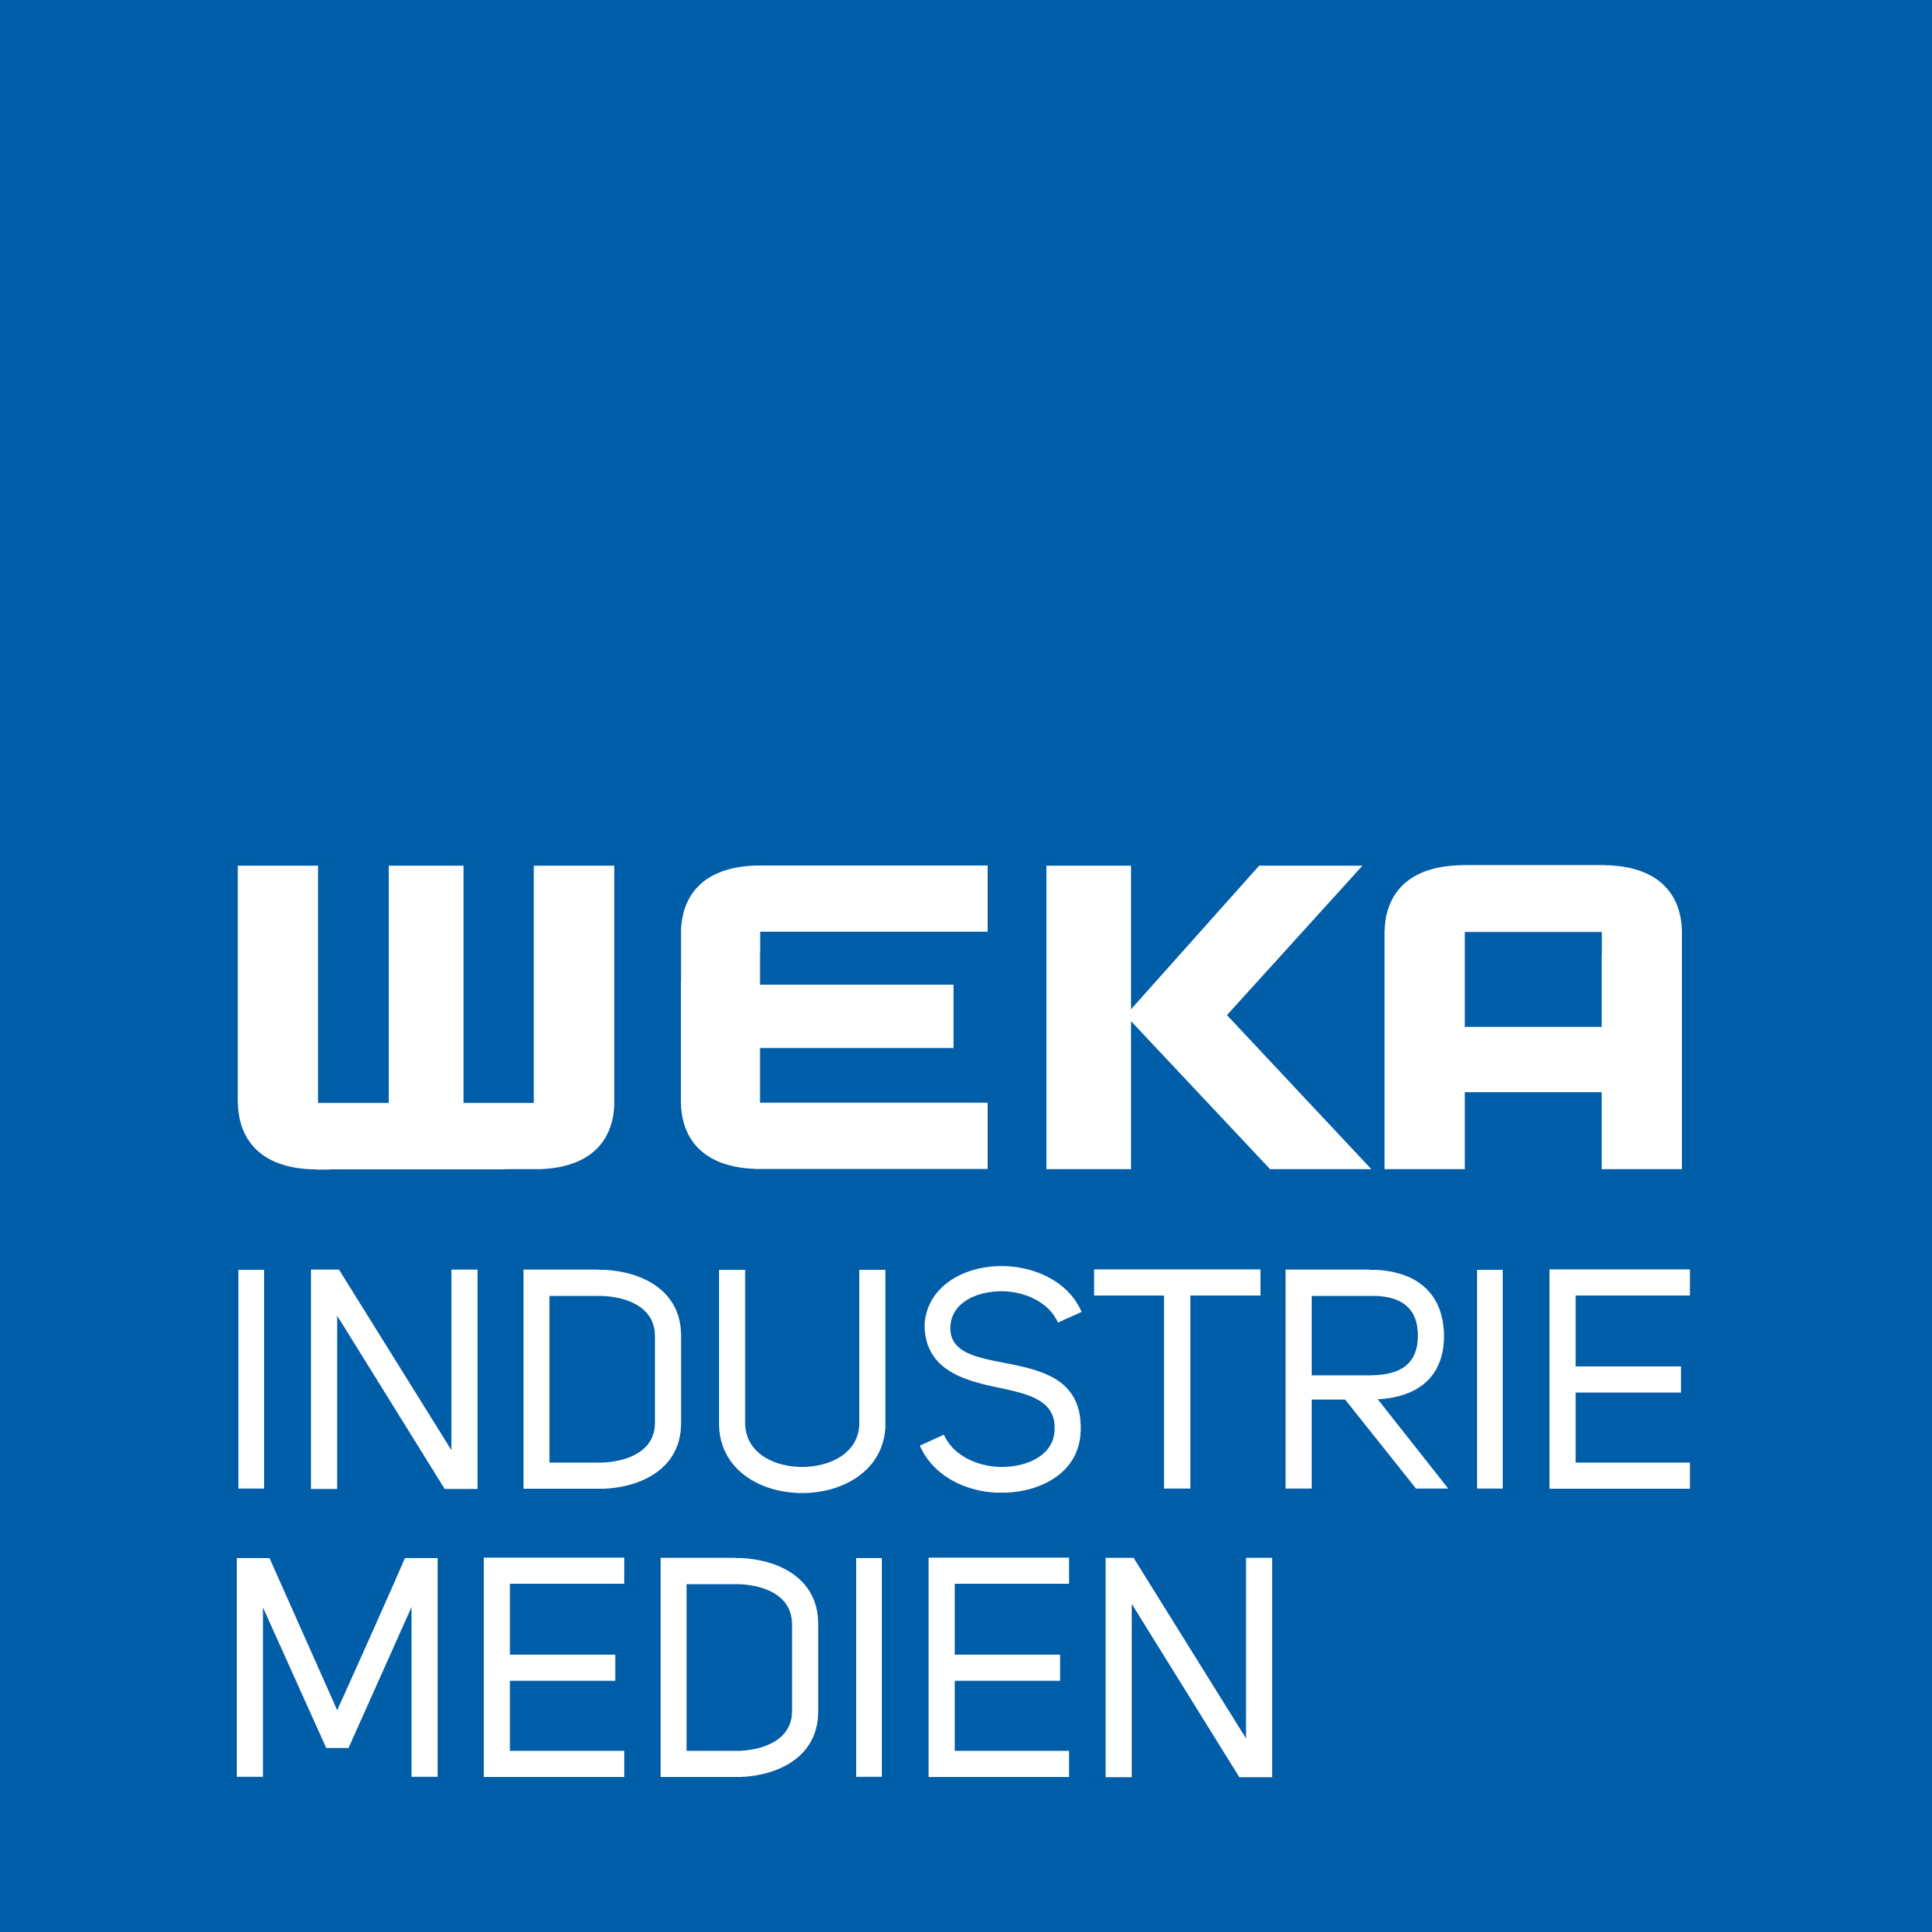 WEKA Industrie Medien Logo